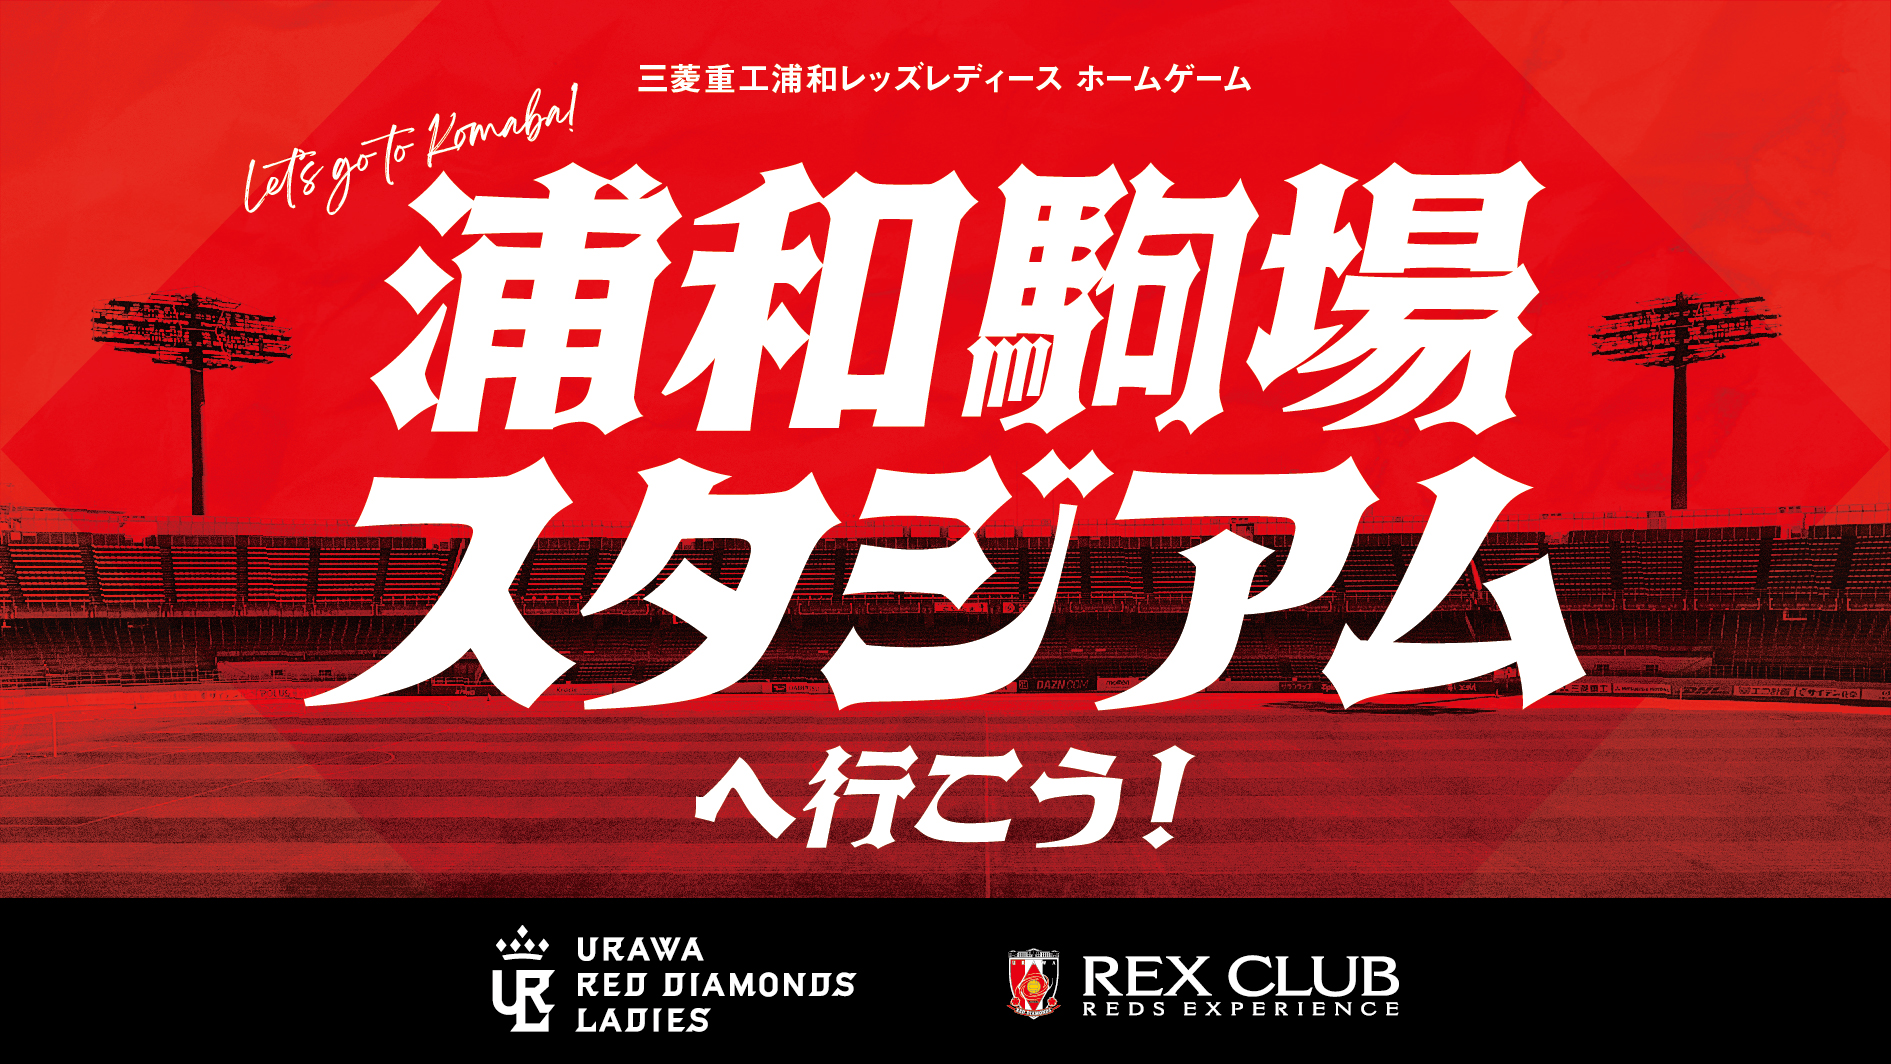 【REX CLUB】3つの特典をご用意! 三菱重工浦和レッズレディース 